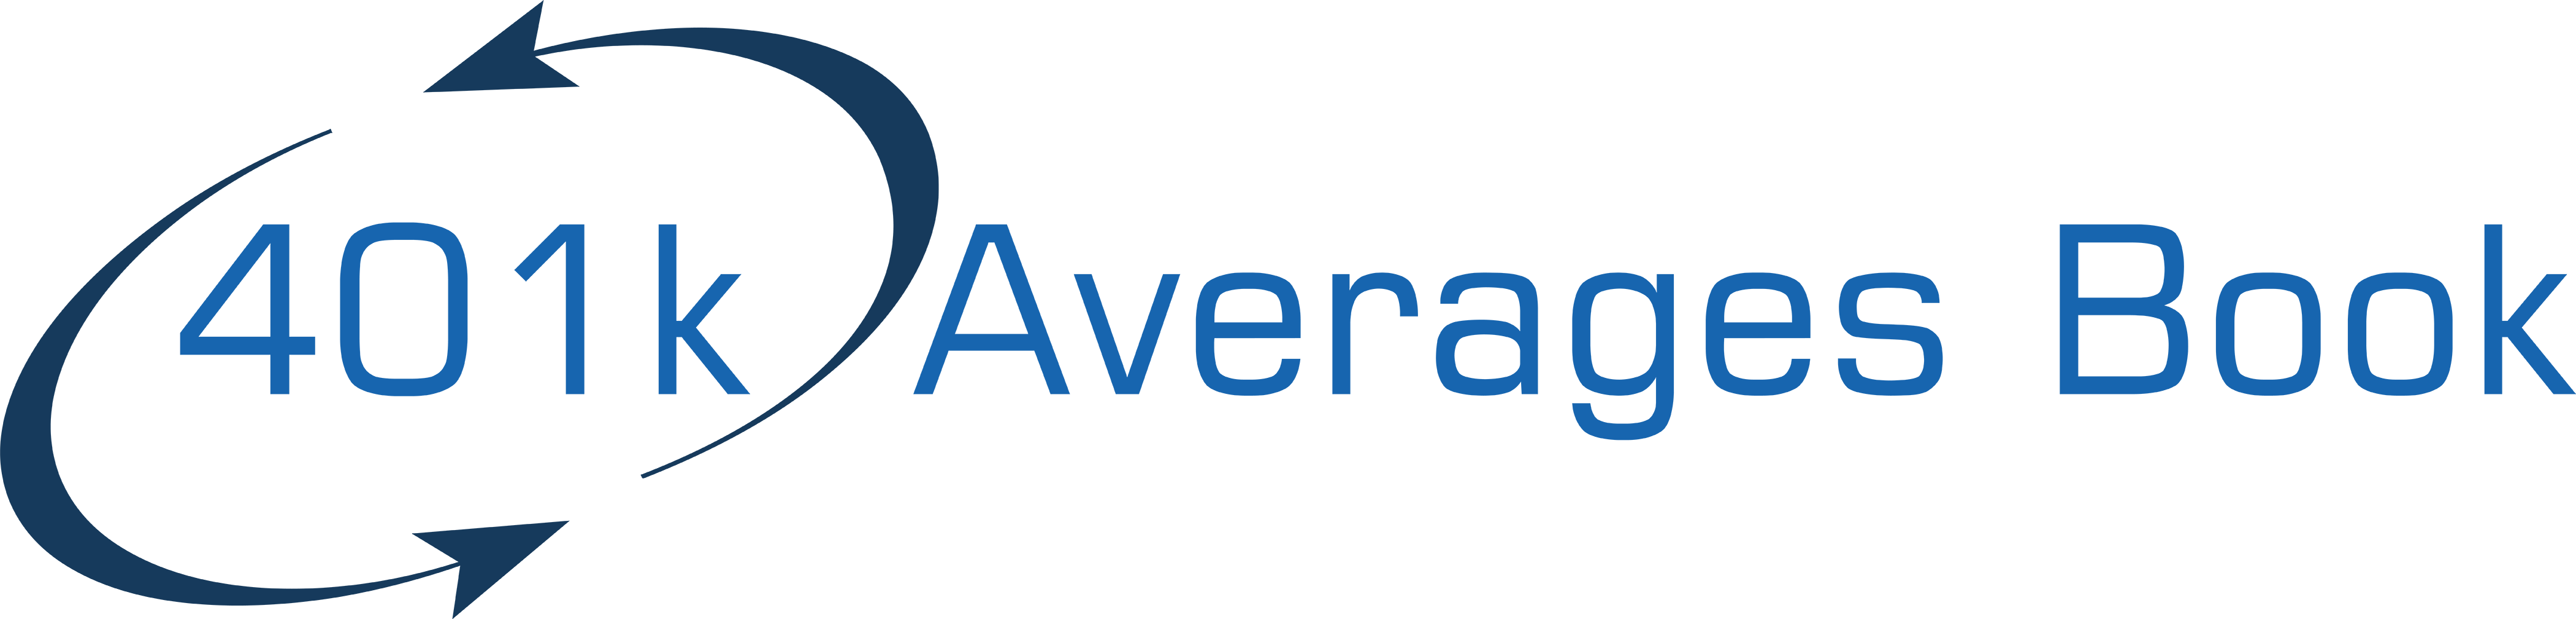 401k Averages Book Logo